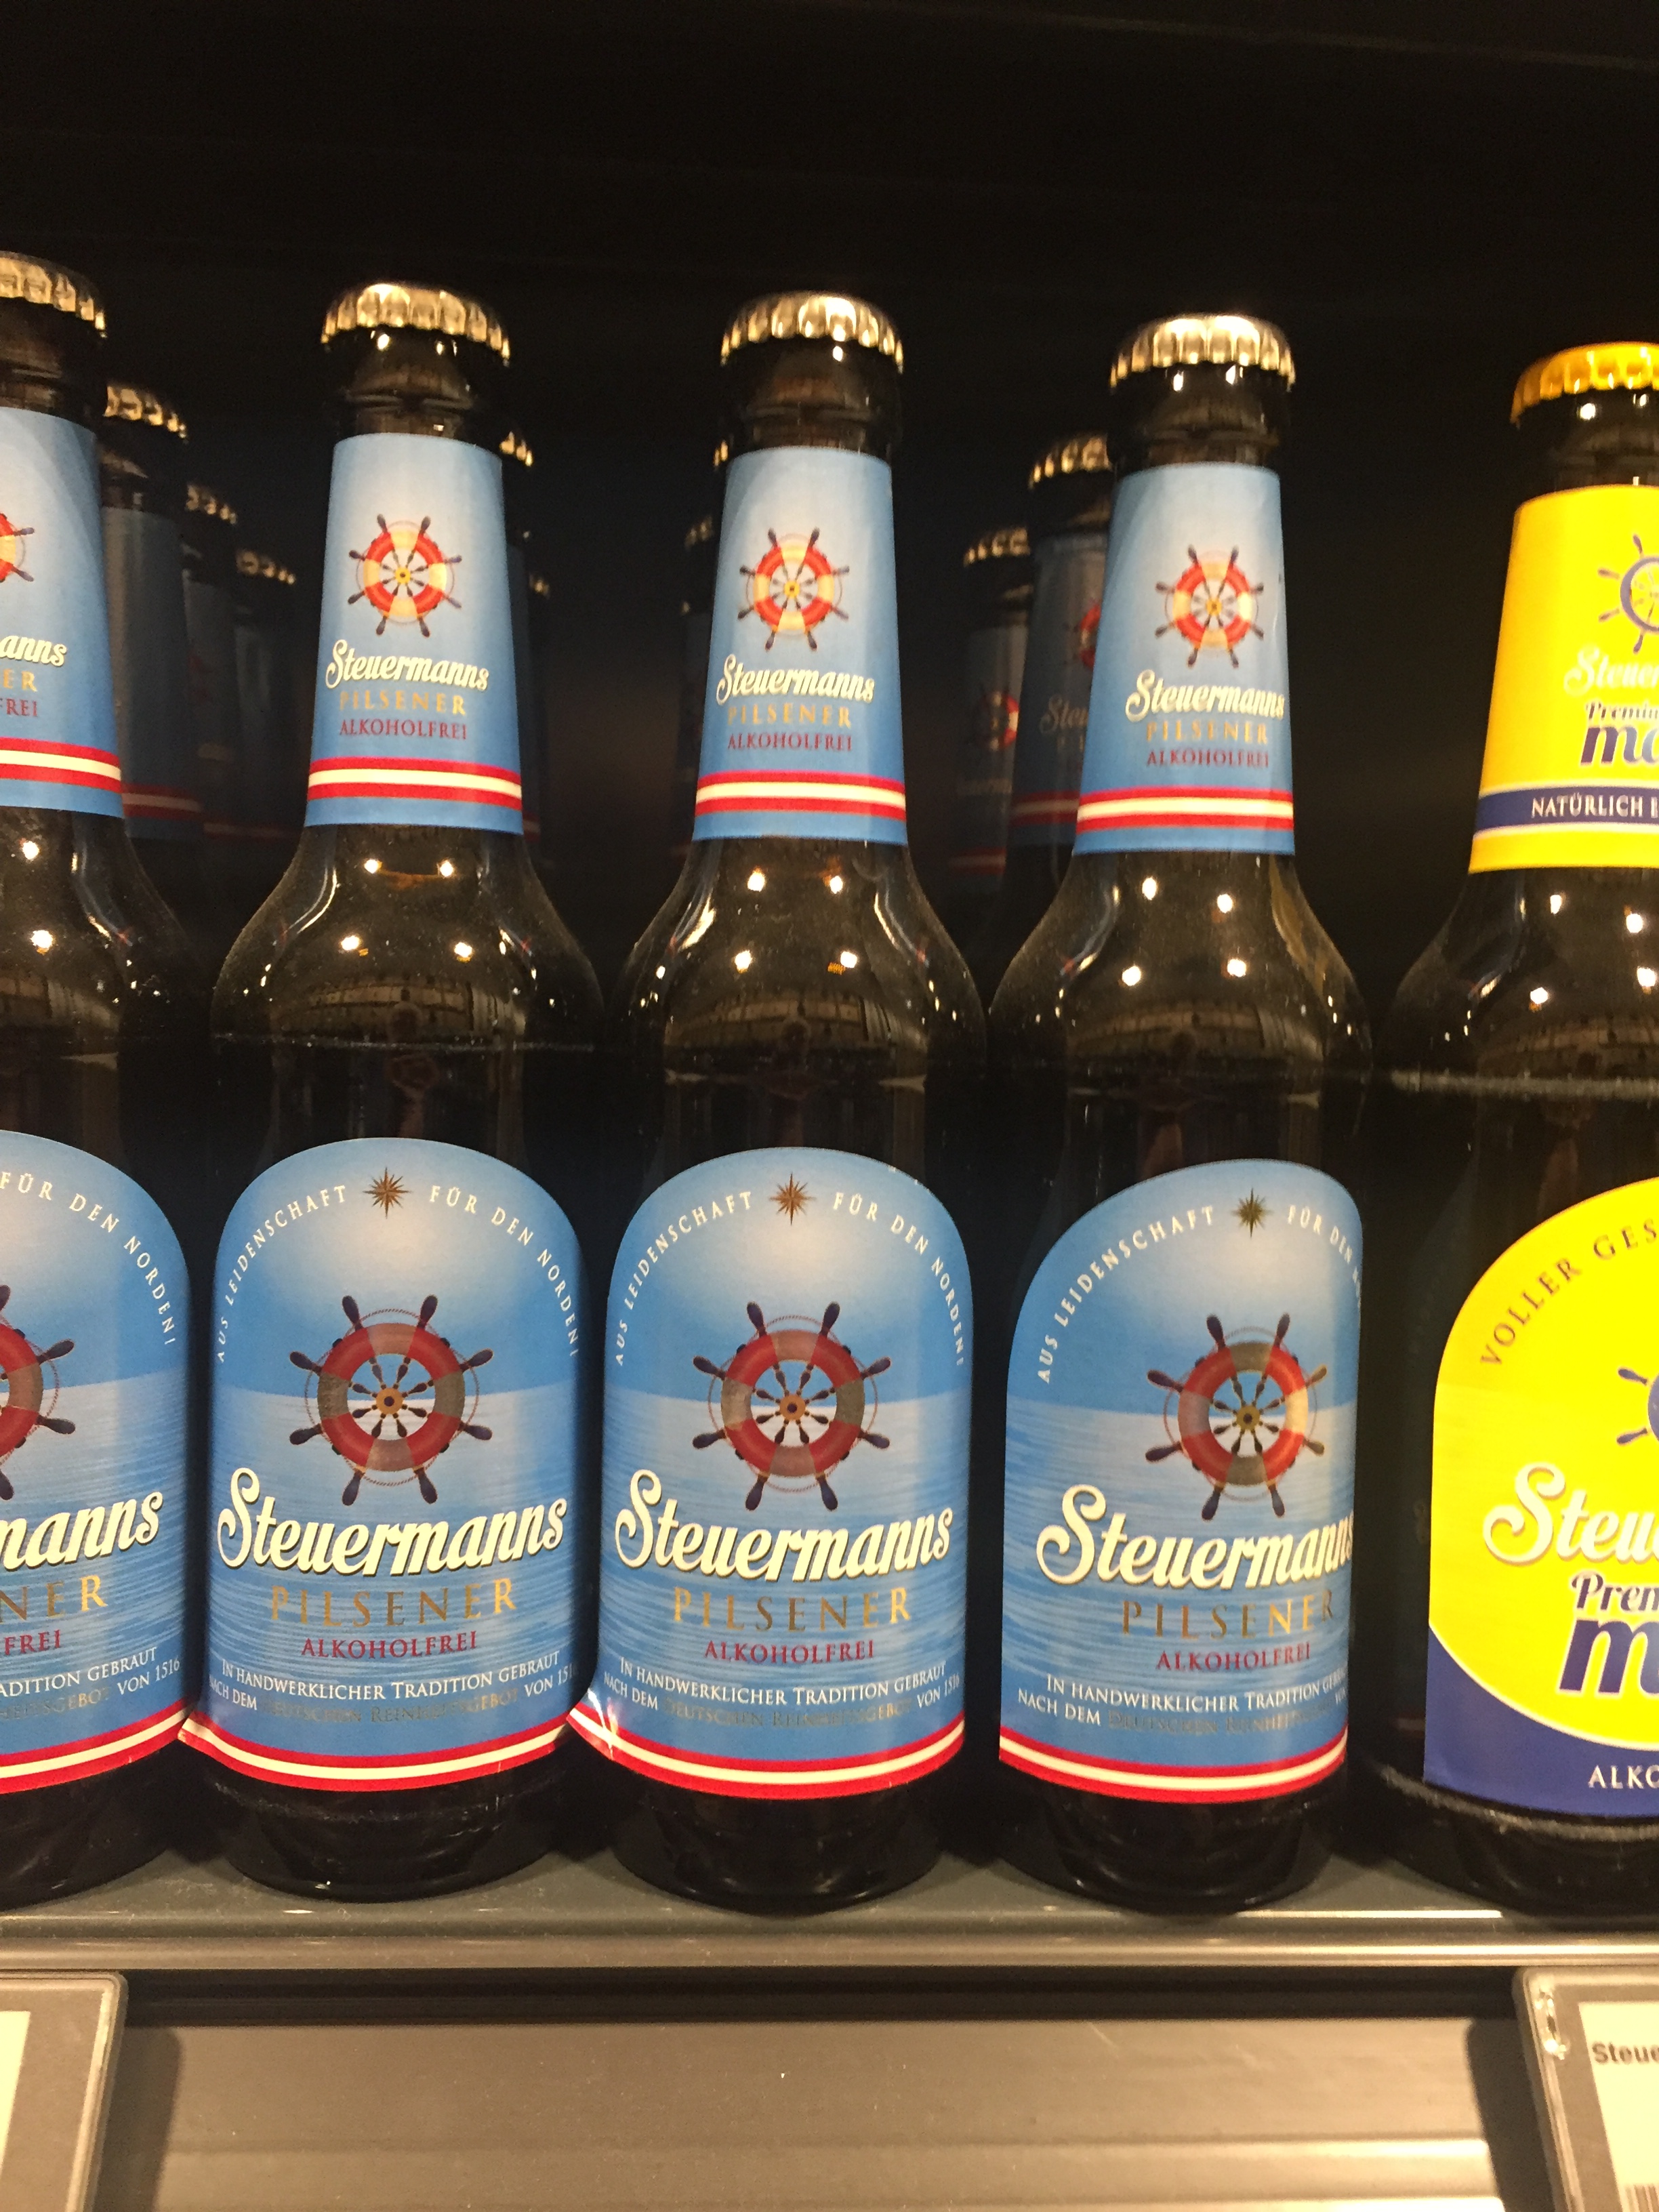 Steuermann's alkoholfreies Bier